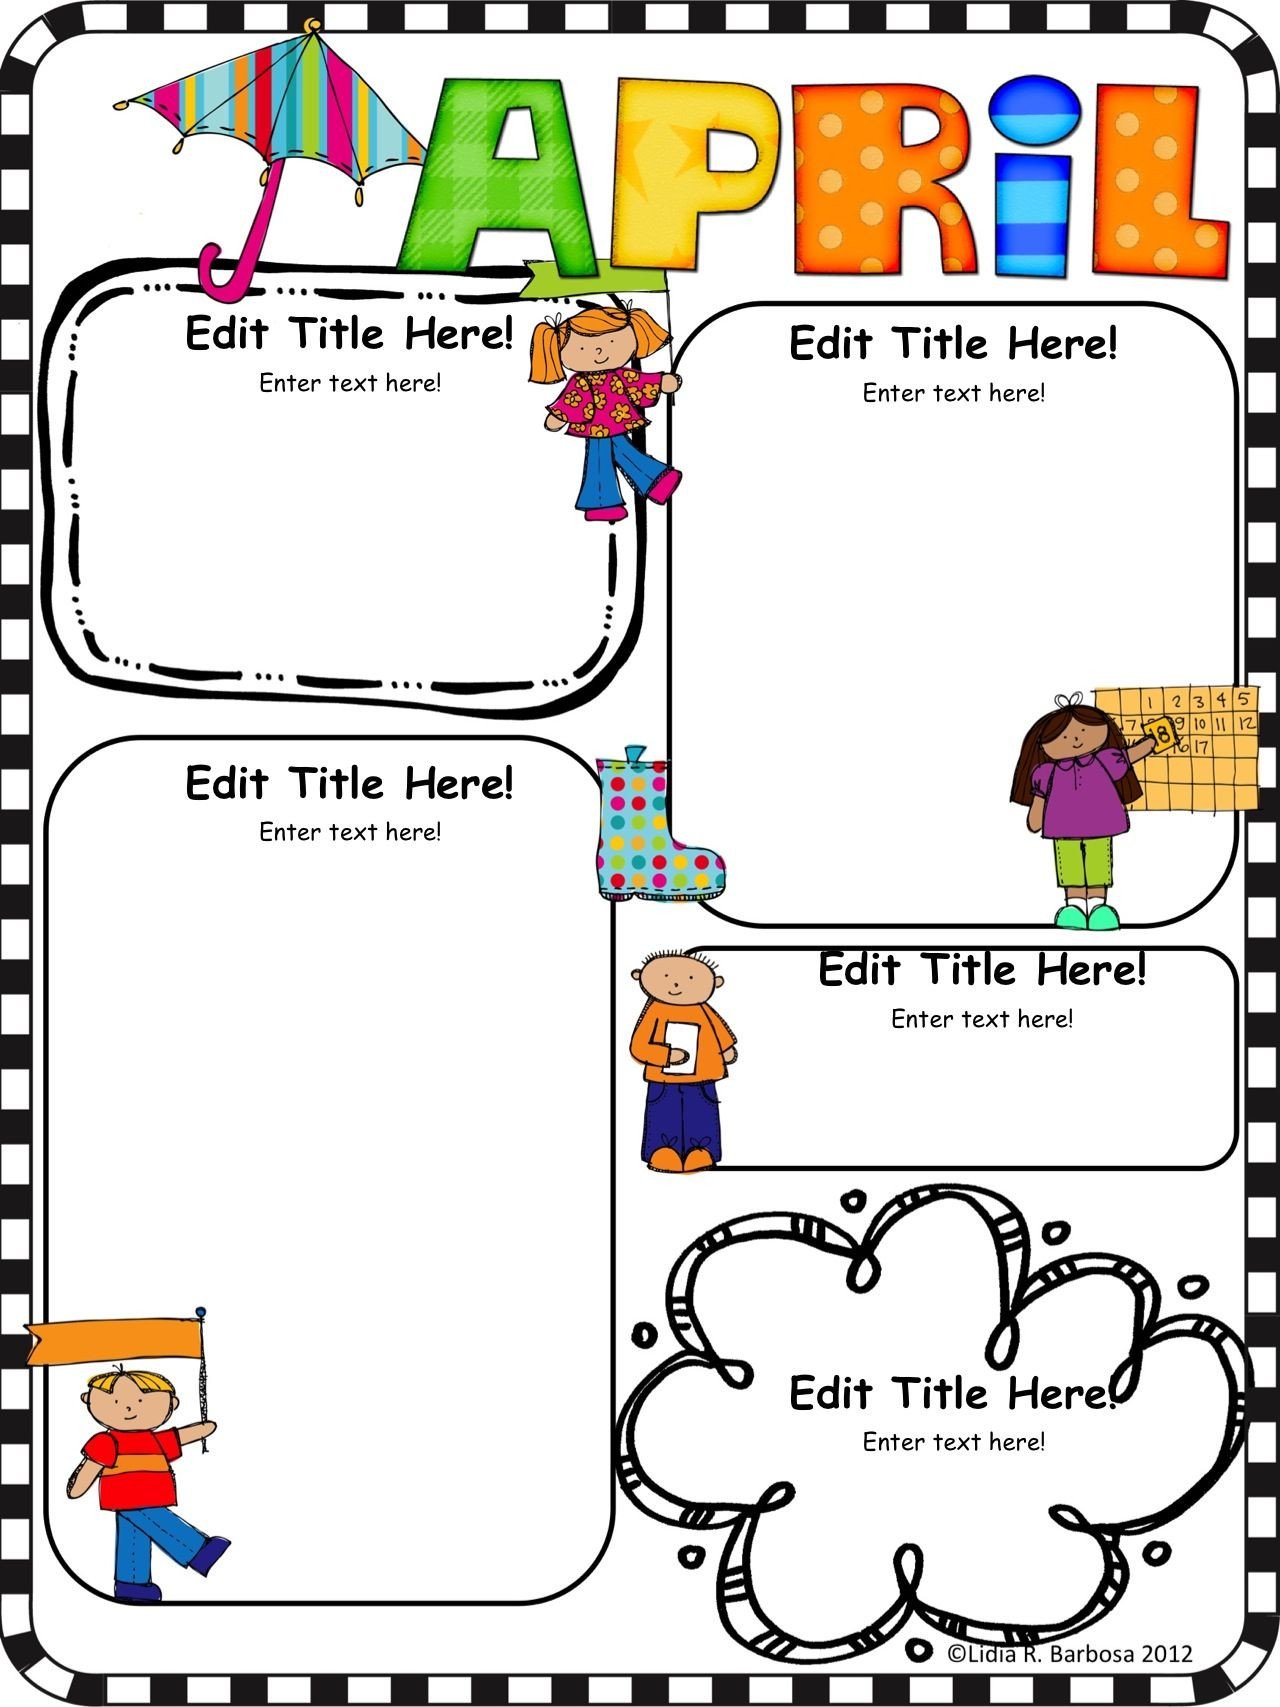 Newsletter Templates for Preschool Pletely Editable Monthly Newsletter Templates English